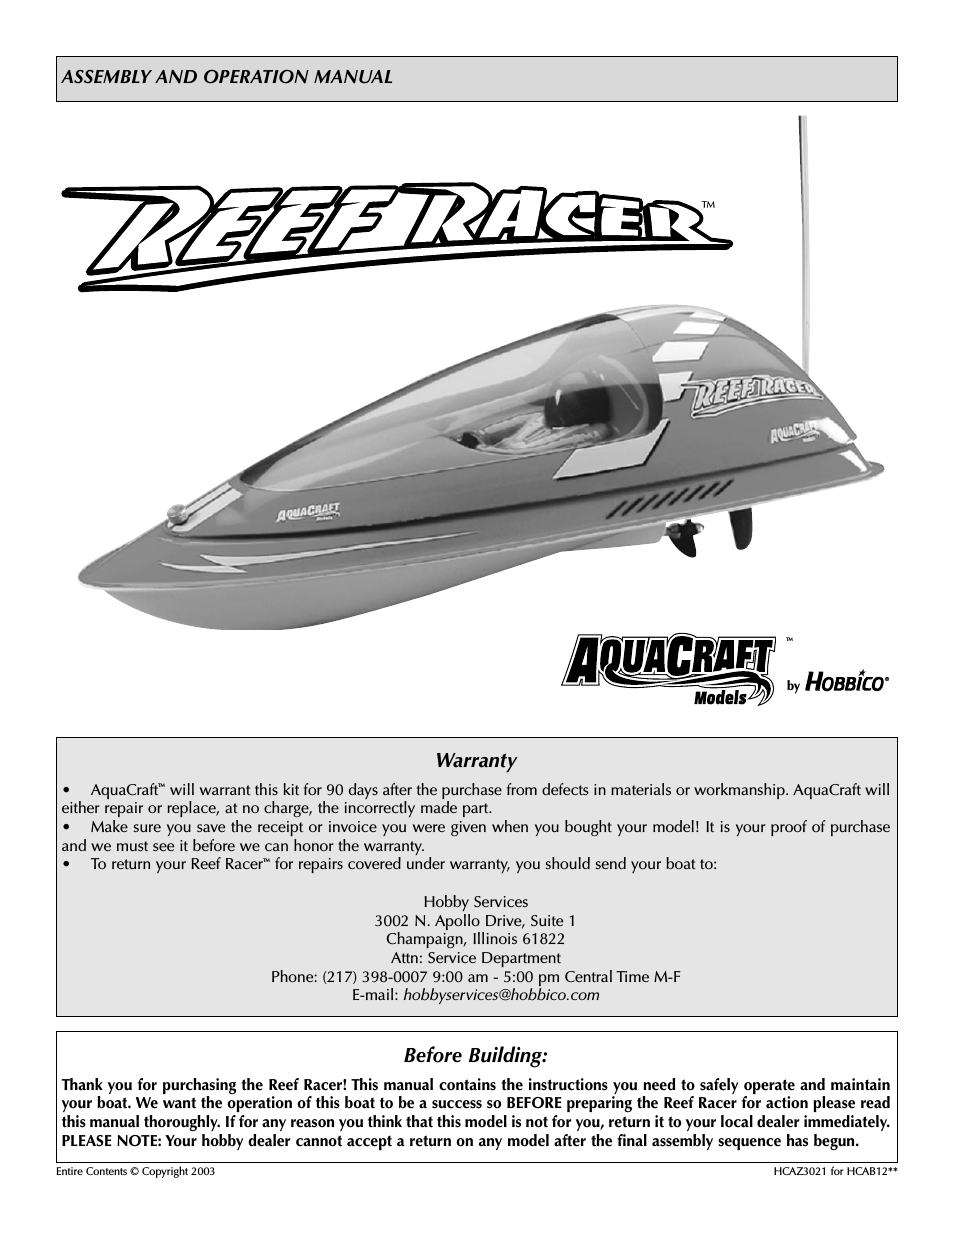 Reef Racer